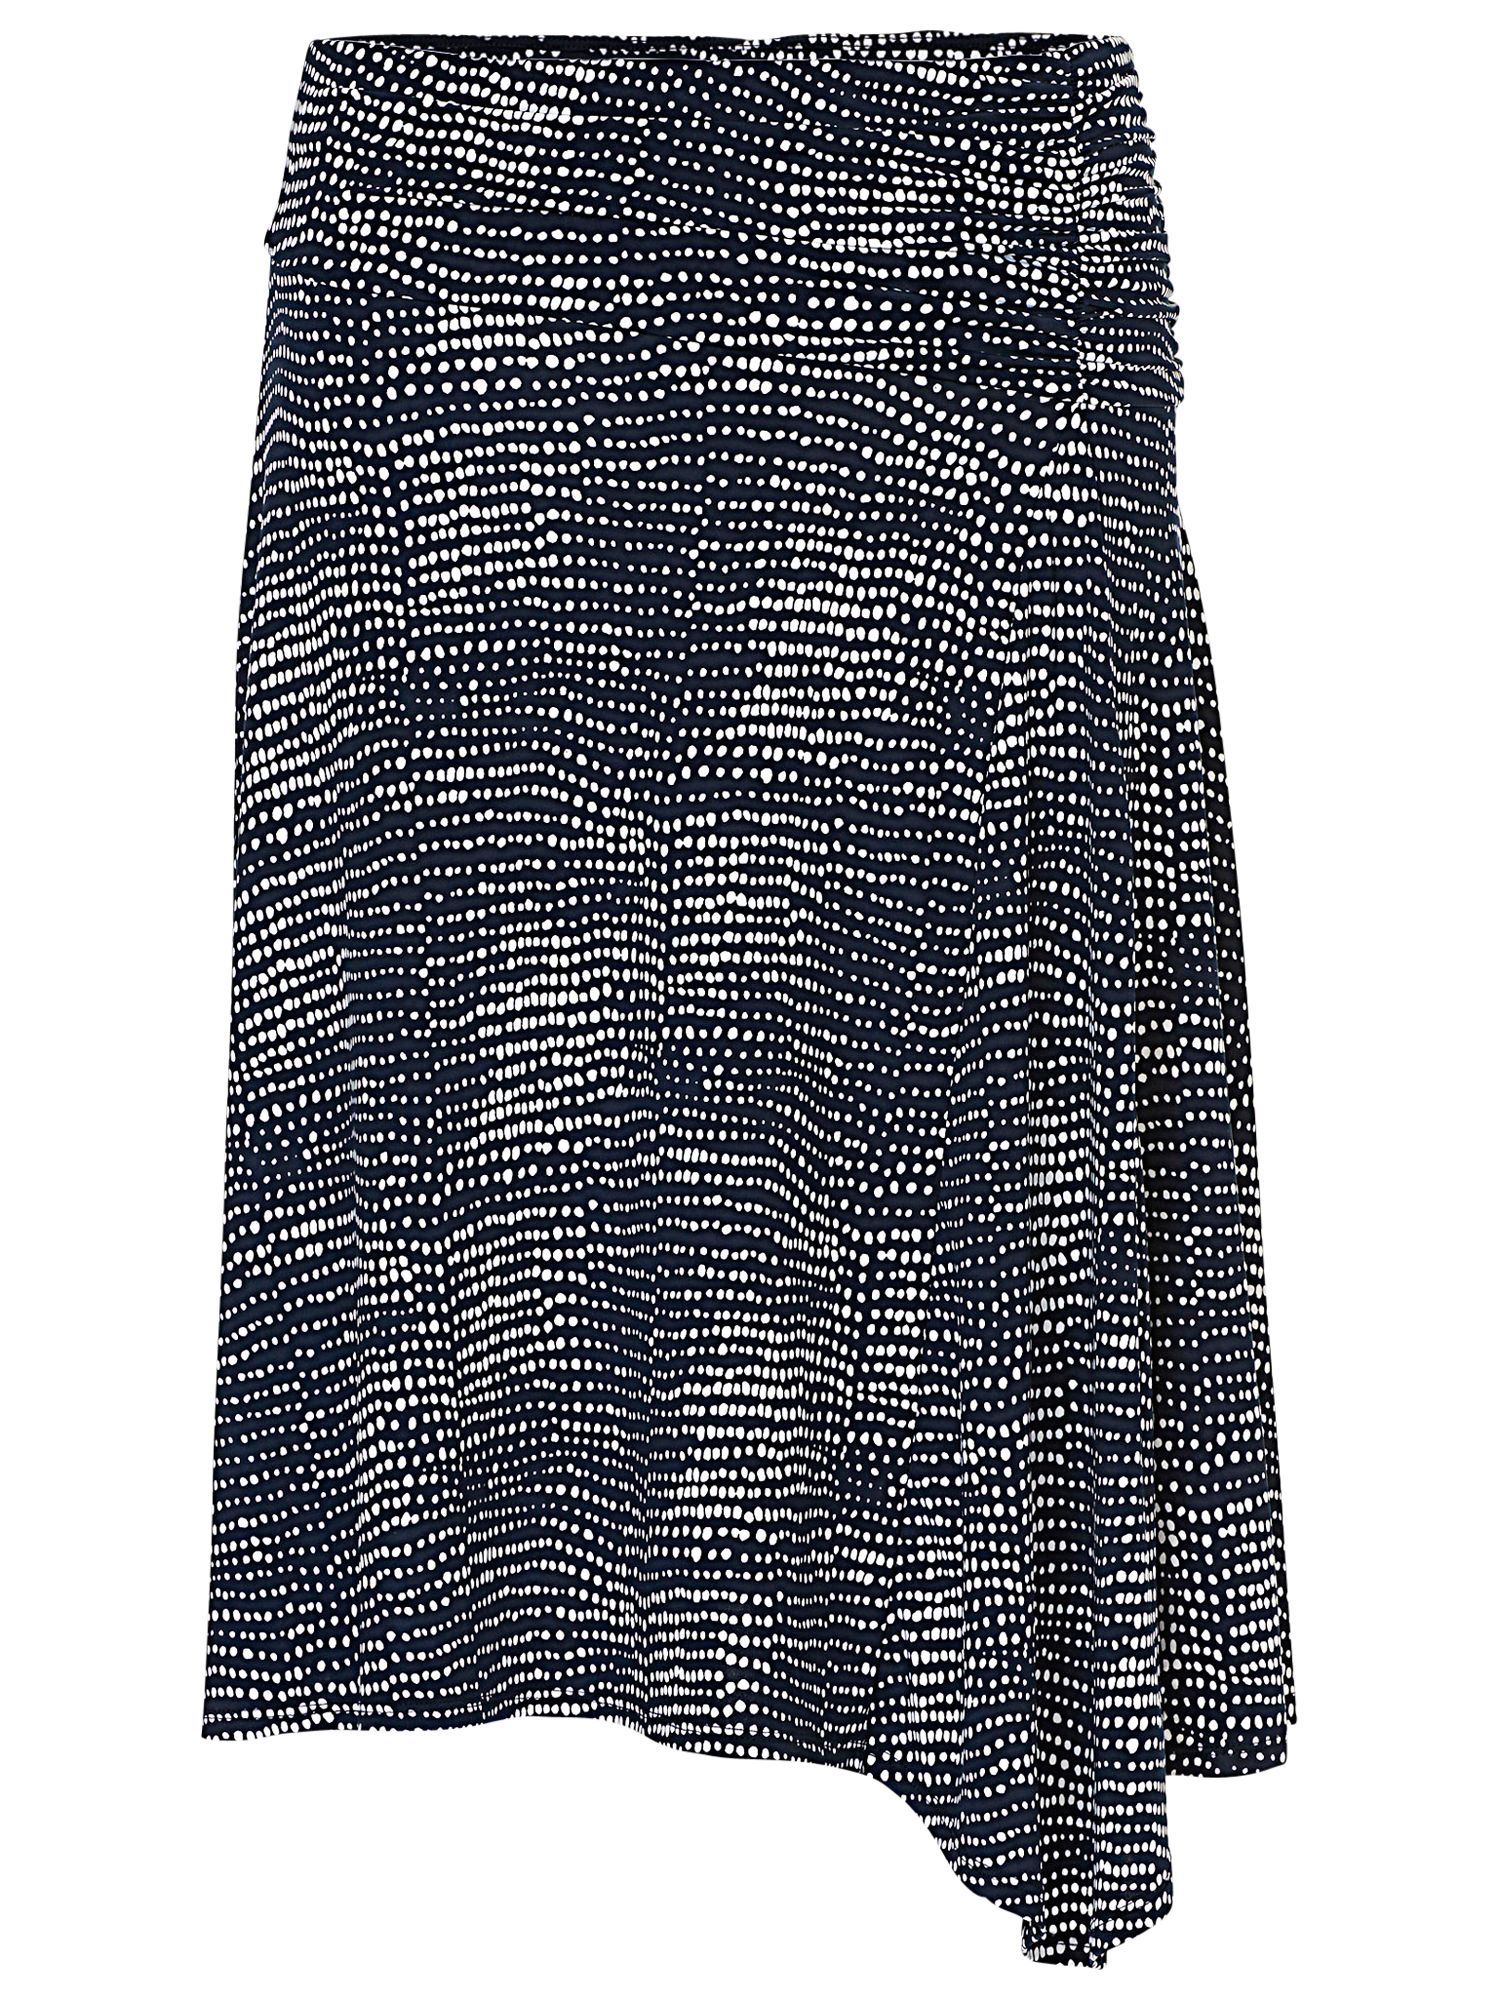 Betty Barclay Printed Skirt, Dark Blue/White